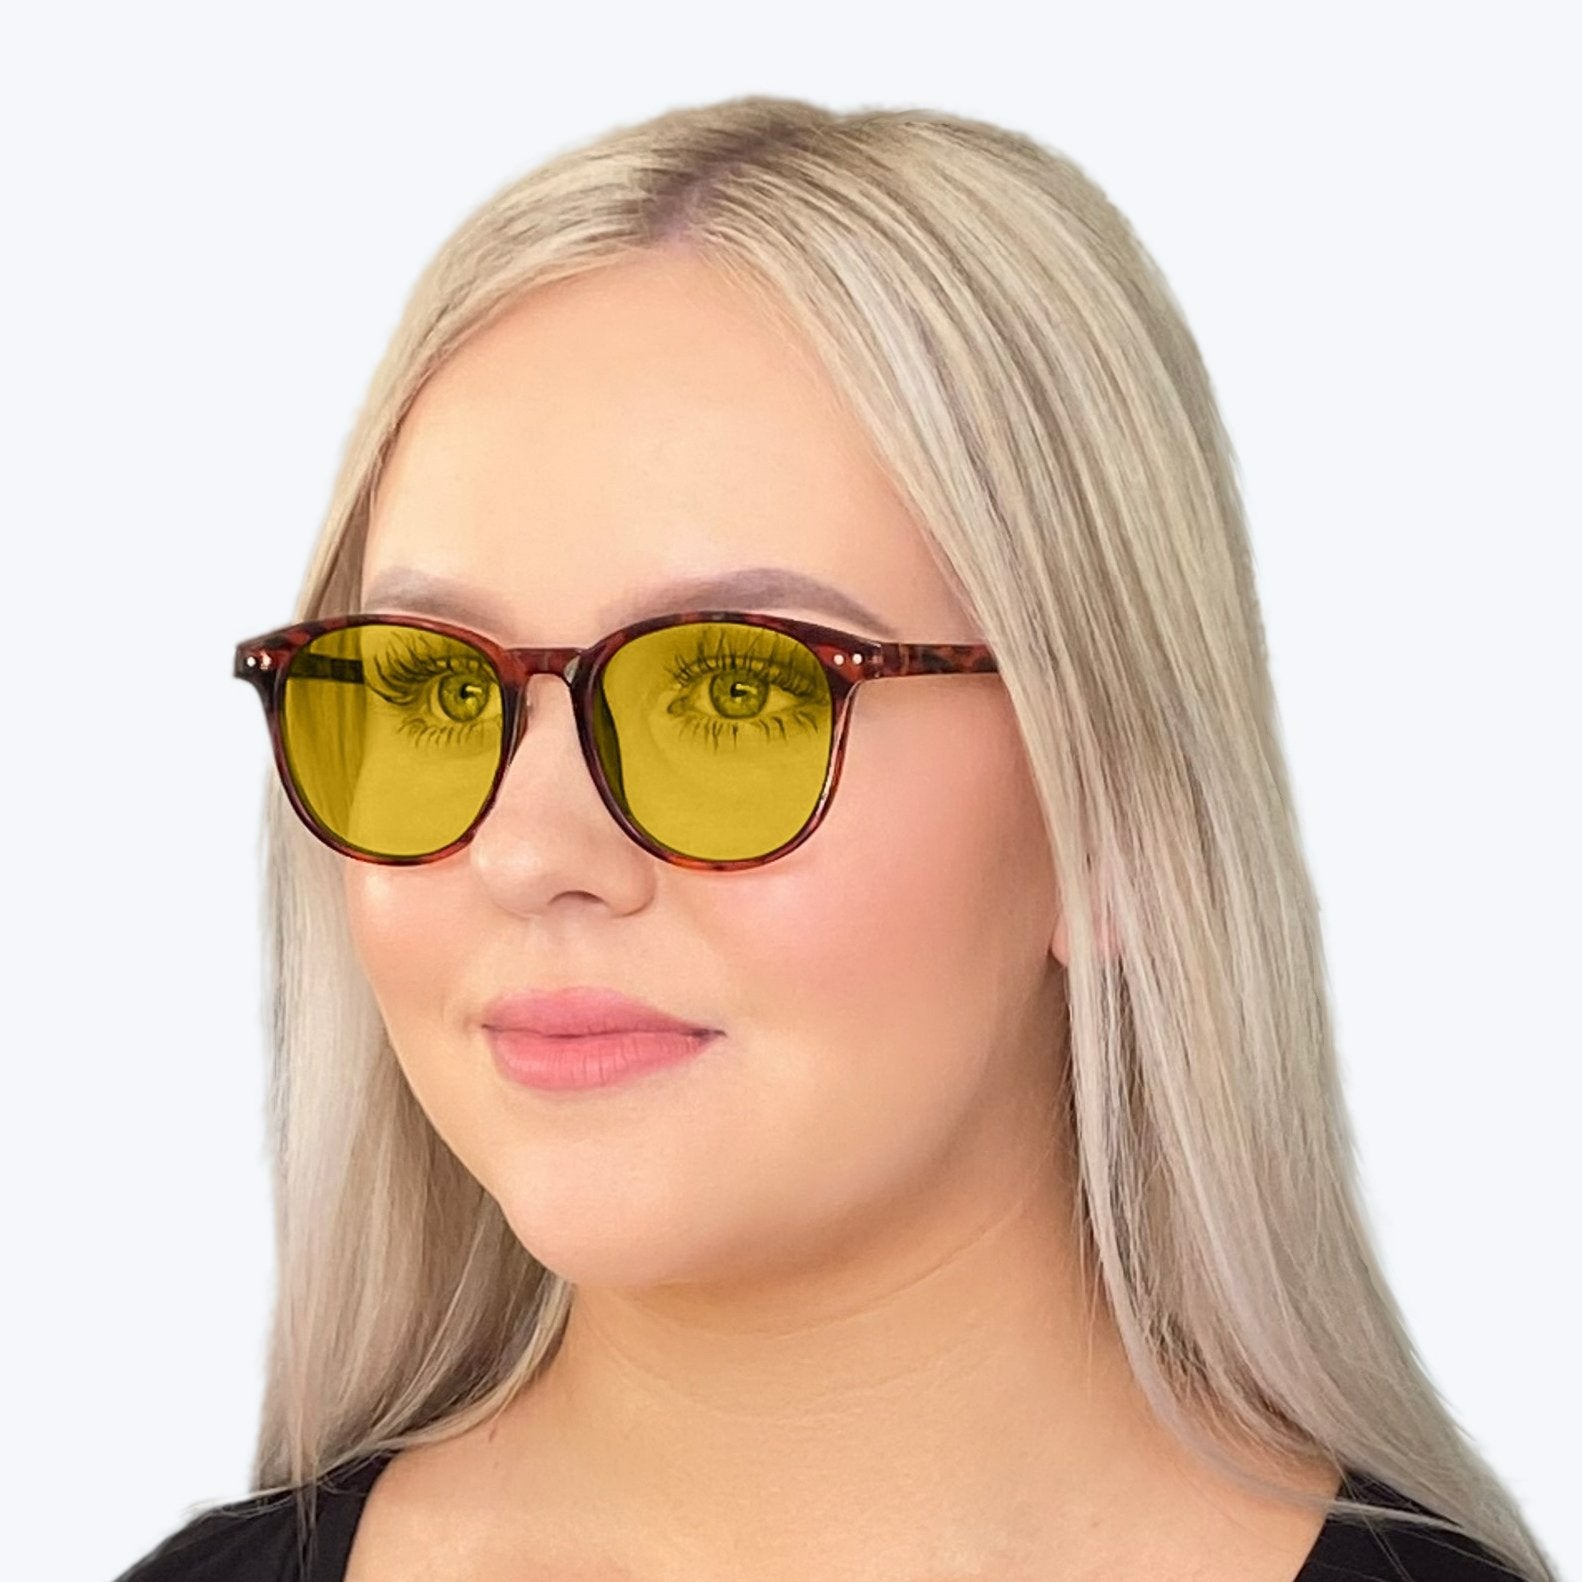 DayMax Billie Glasses - Tortoise Blue Light Filter Glasses - Yellow Lens BlockBlueLight 